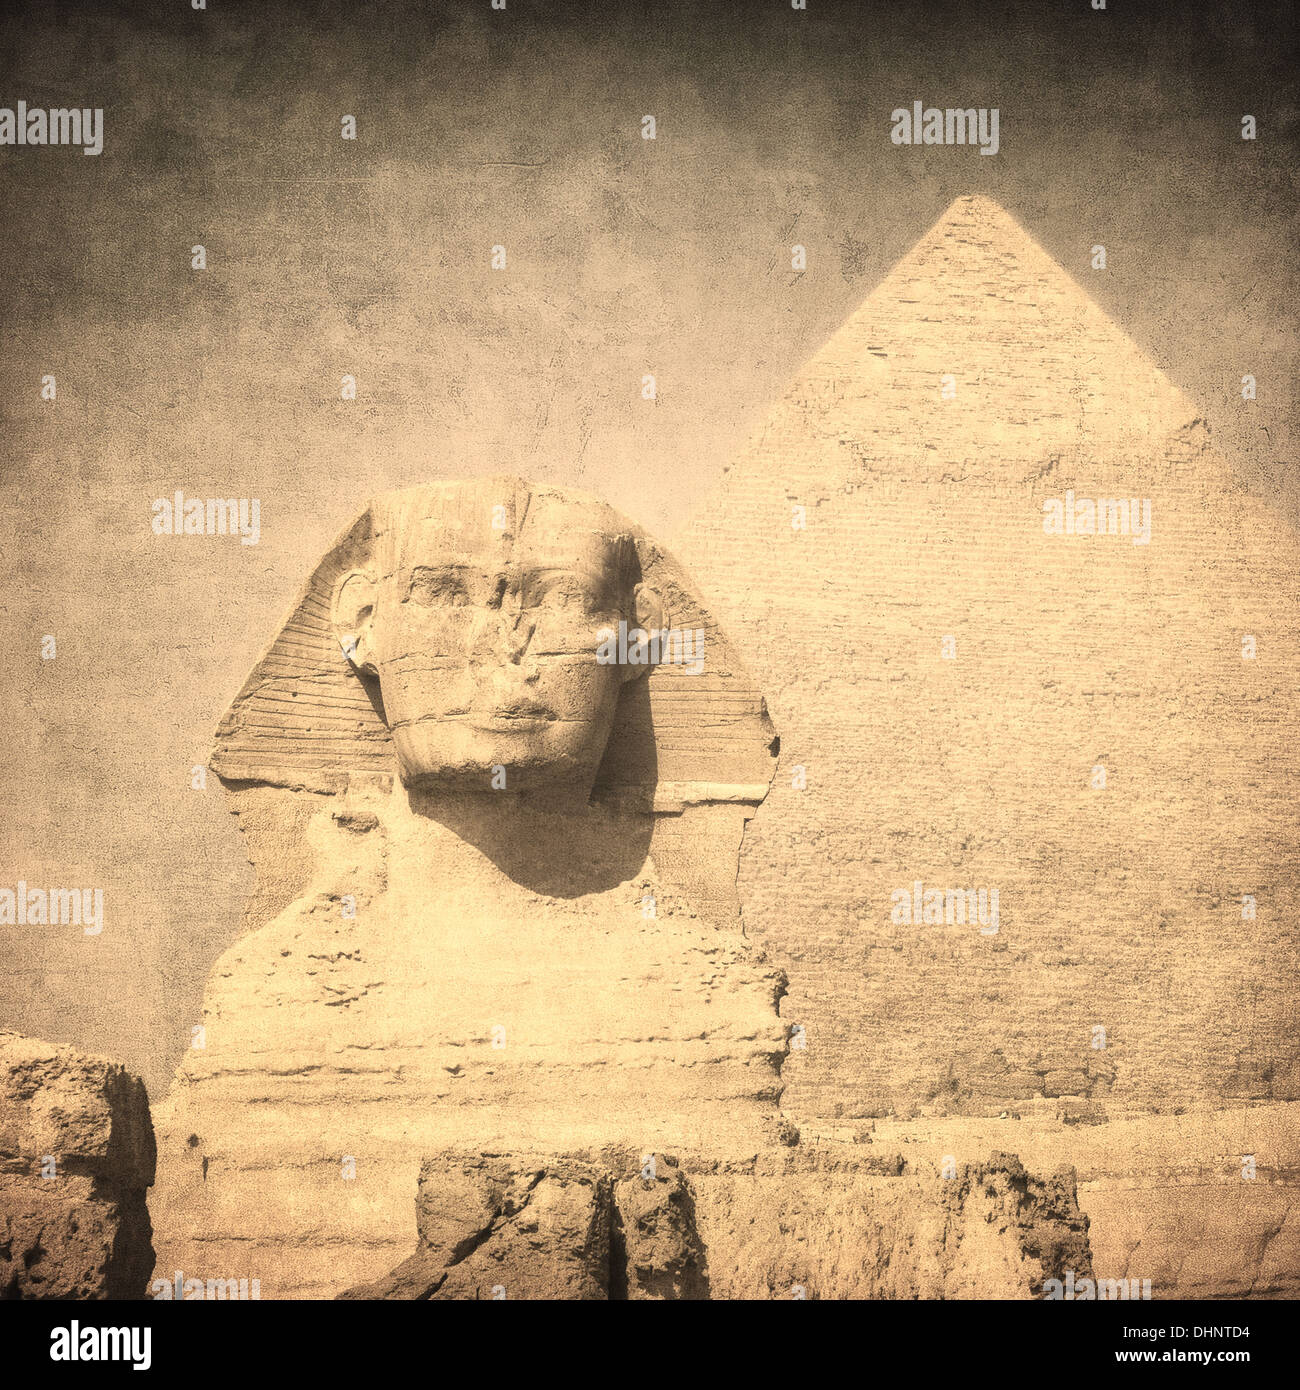 Immagine di grunge di sphynx e piramide Foto Stock